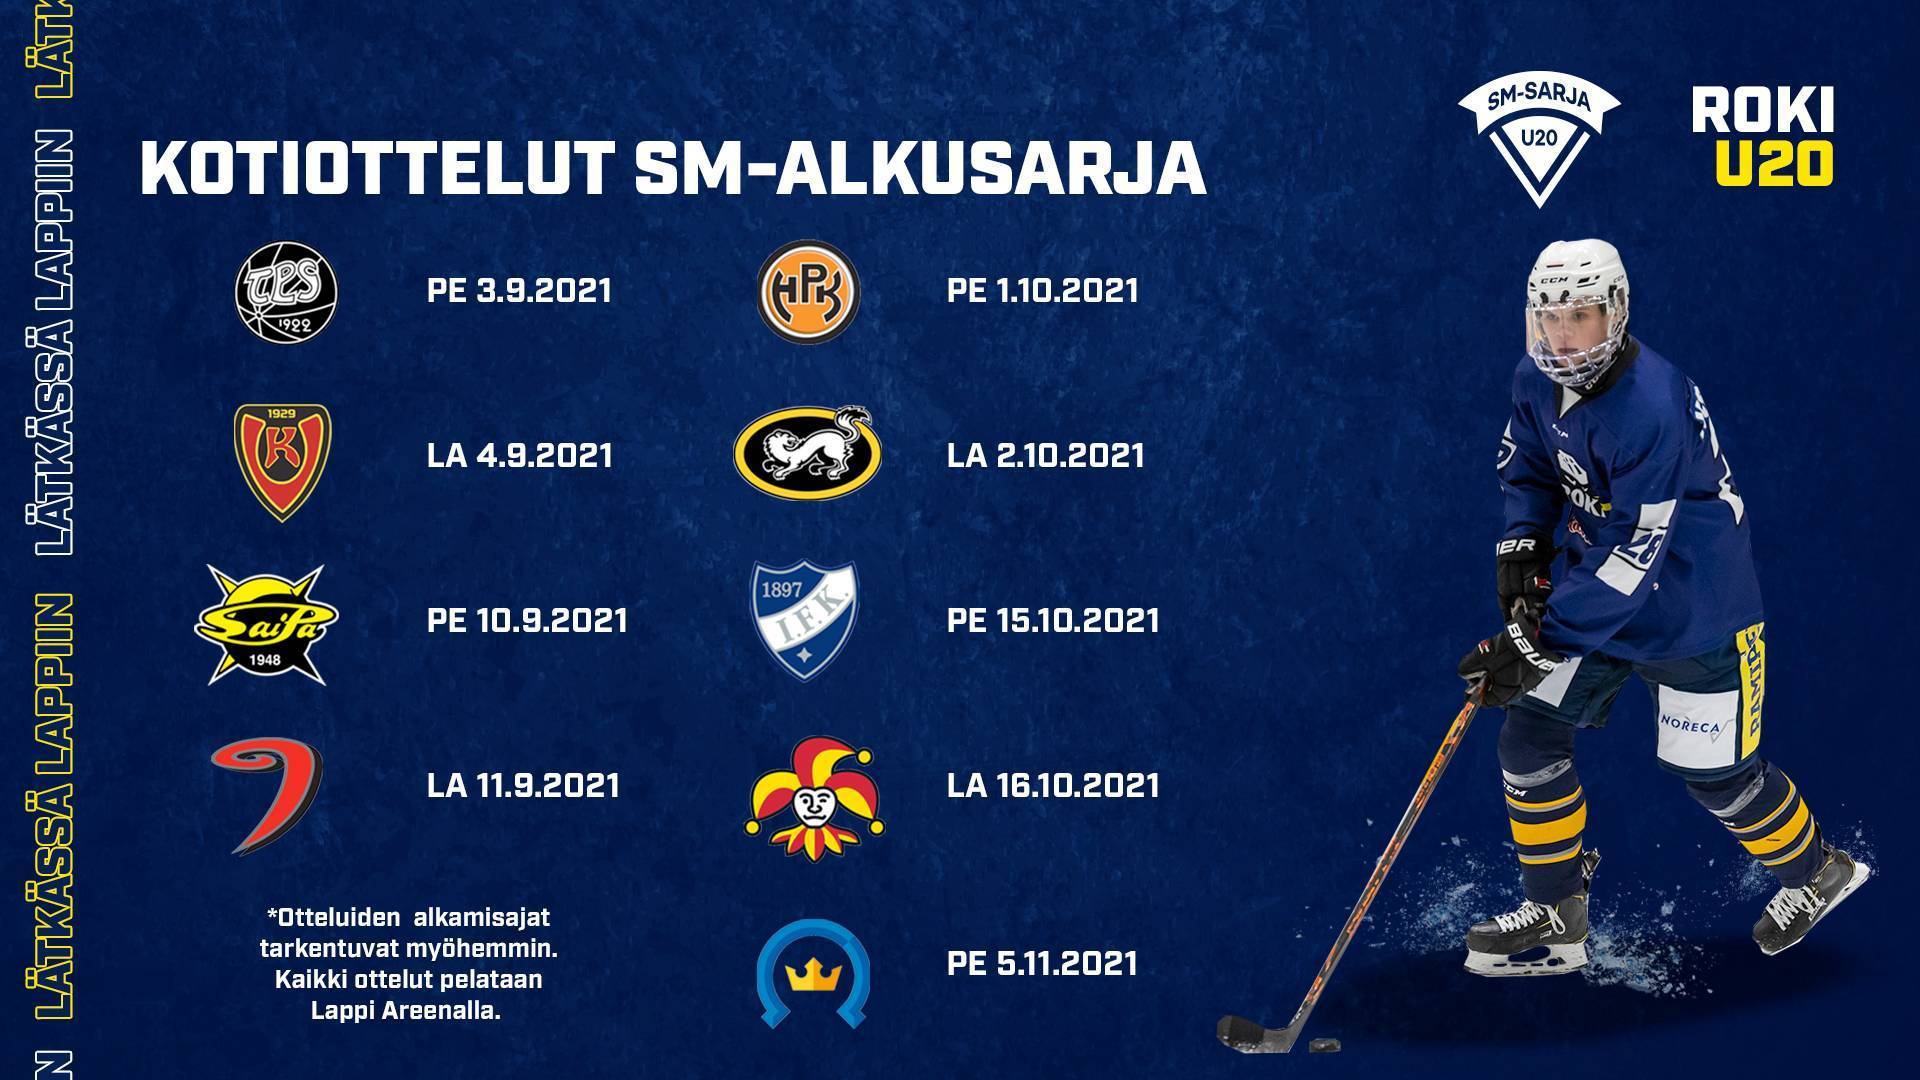 U20 SM-alkusarjan otteluohjelma julkaistu - RoKi U20 kausi käyntiin 3.9.